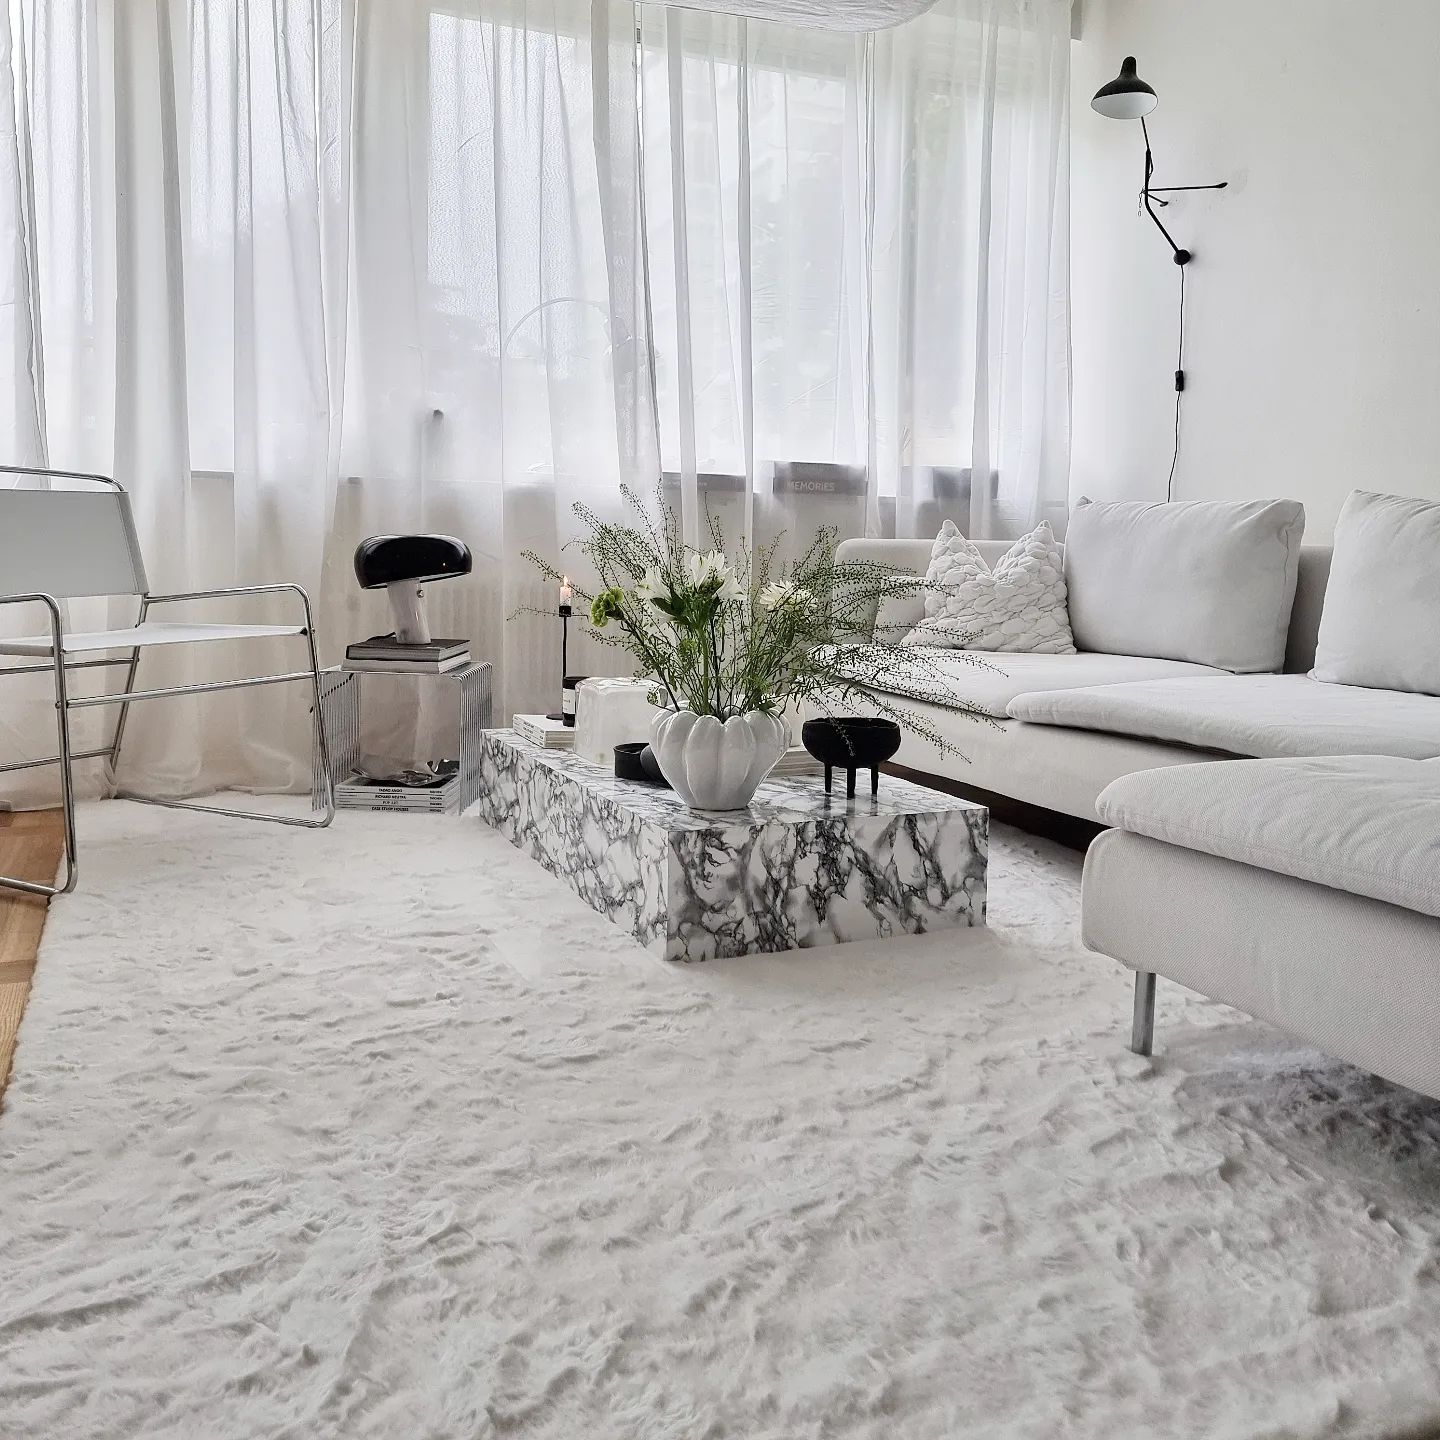 Vit polyester matta i mjuk & fluffig textur i vardagsrummet under soffa och soffbord.